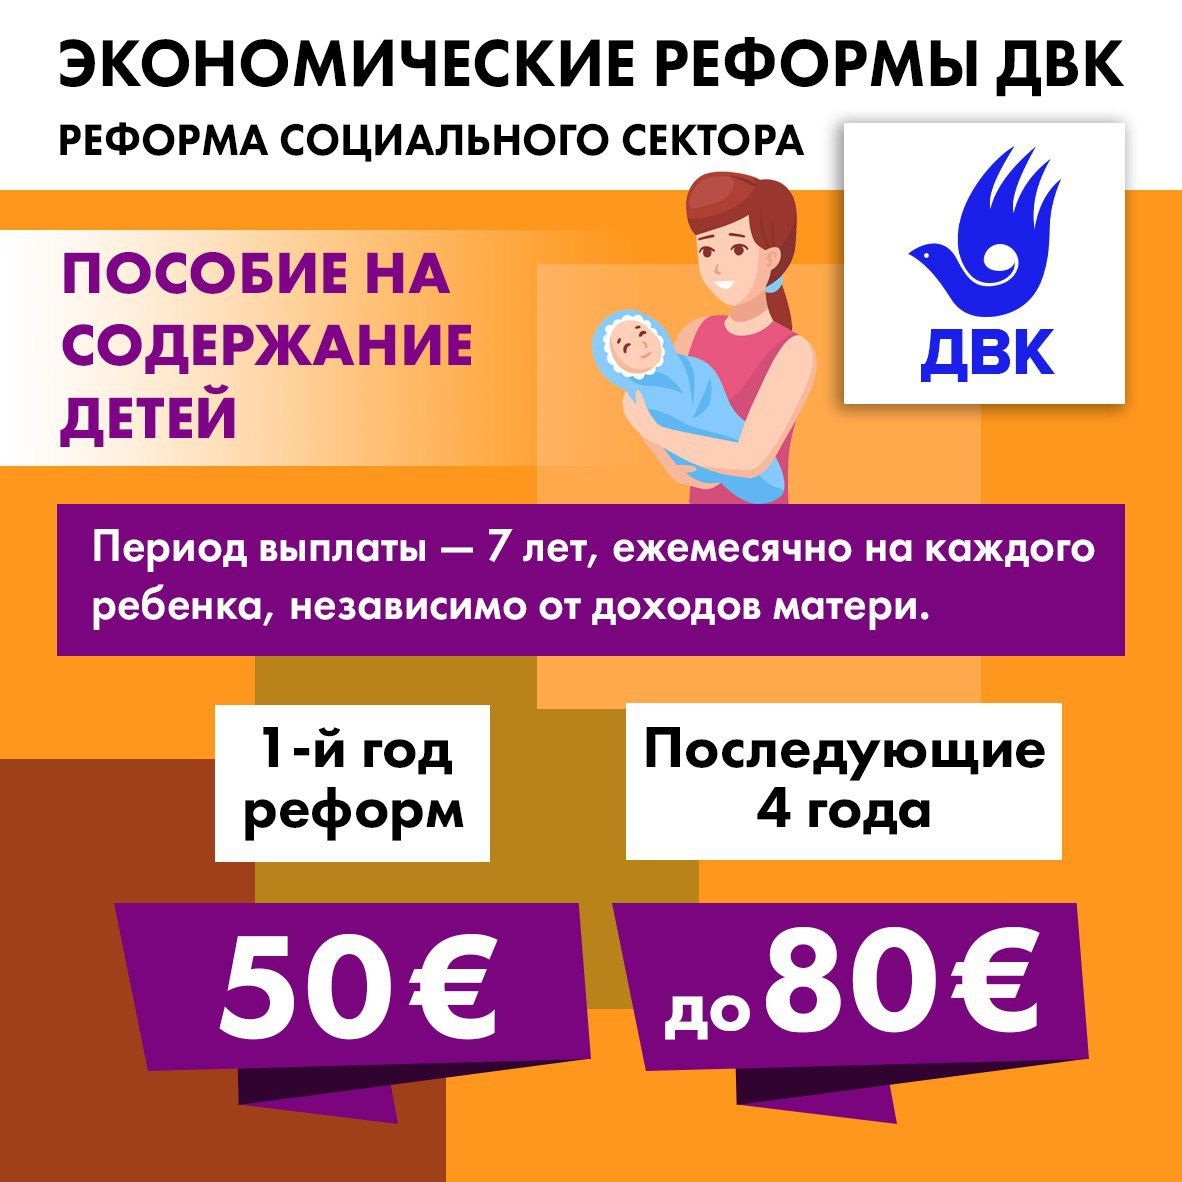 Выплата мамам до 25. Детские выплаты в Казахстане. Пособие на 3 ребенка неработающей матери.